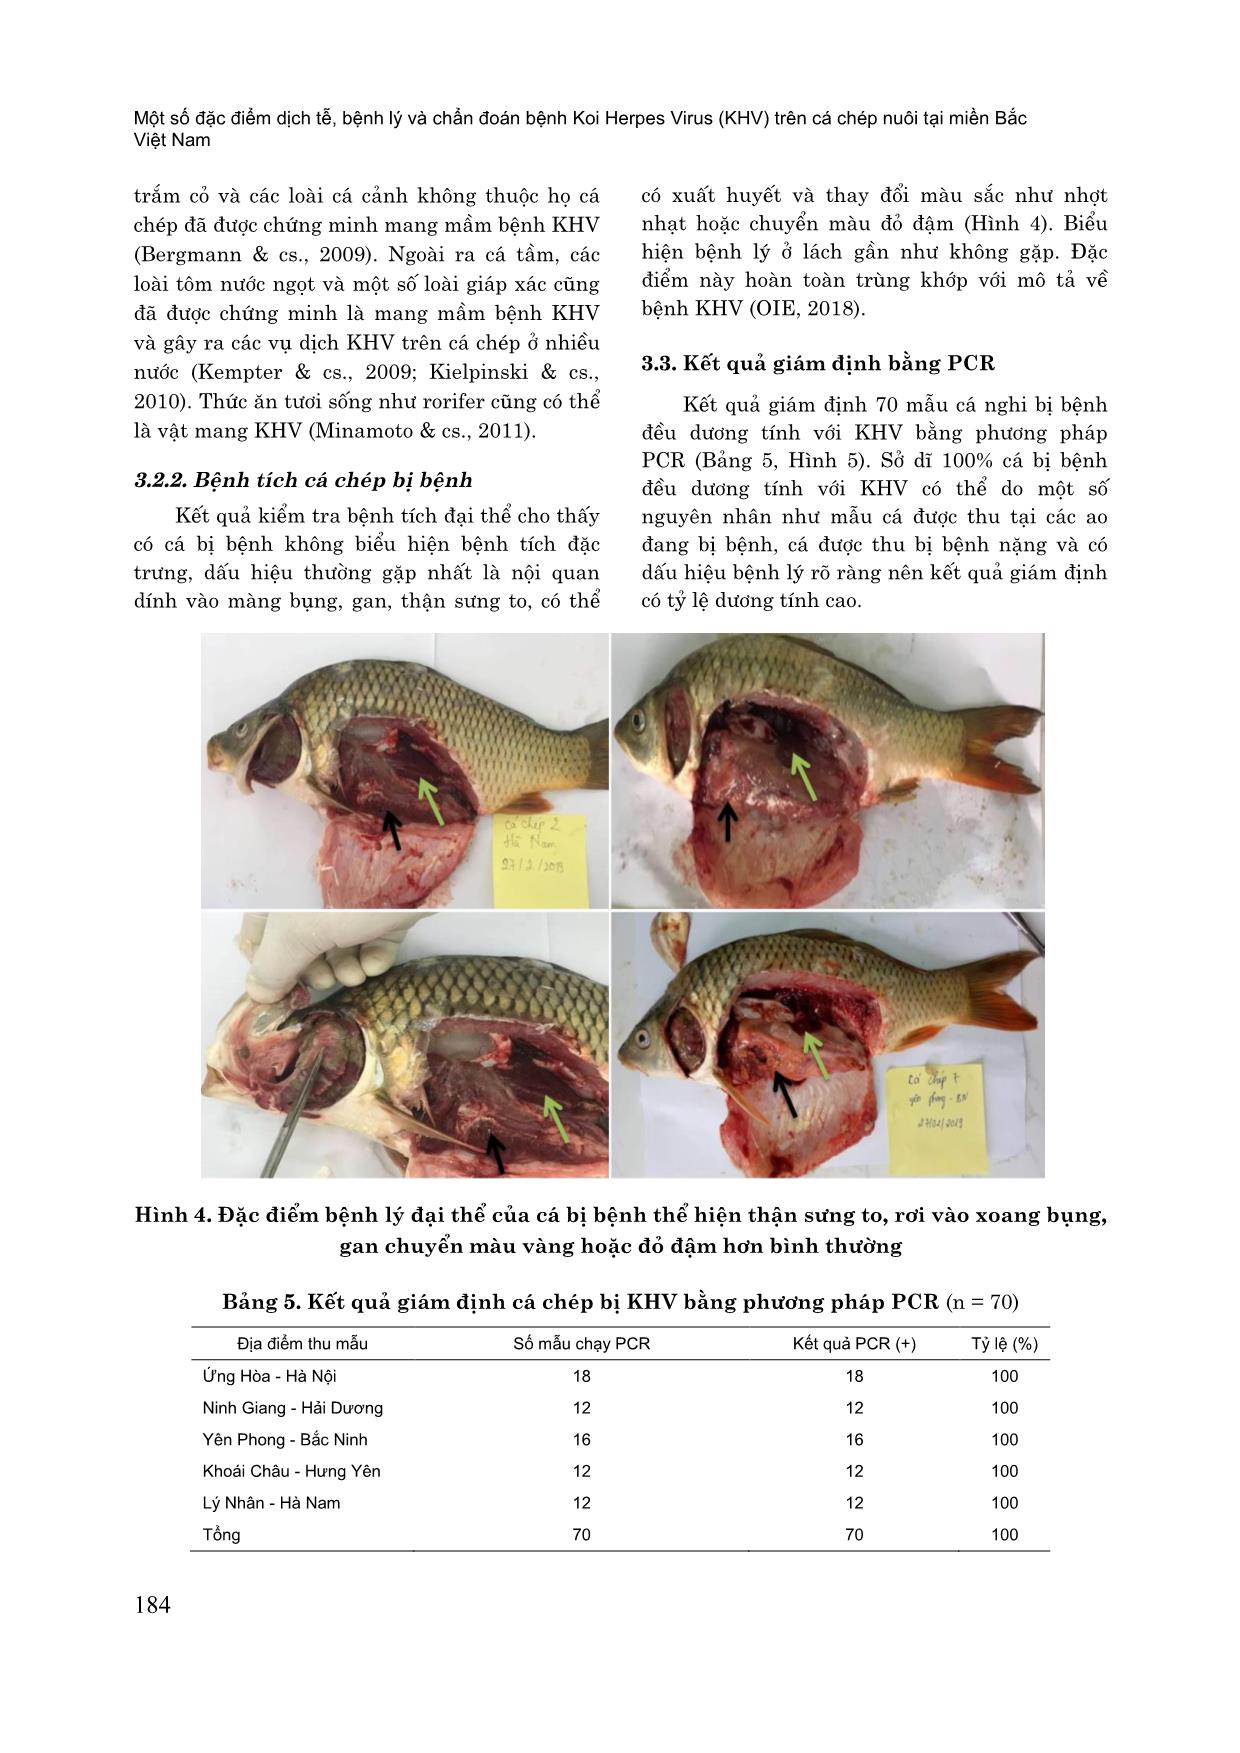 Một số đặc điểm dịch tễ, bệnh lý và chẩn đoán bệnh koi herpes virus (KHV) trên cá chép nuôi tại miền Bắc Việt Nam trang 7